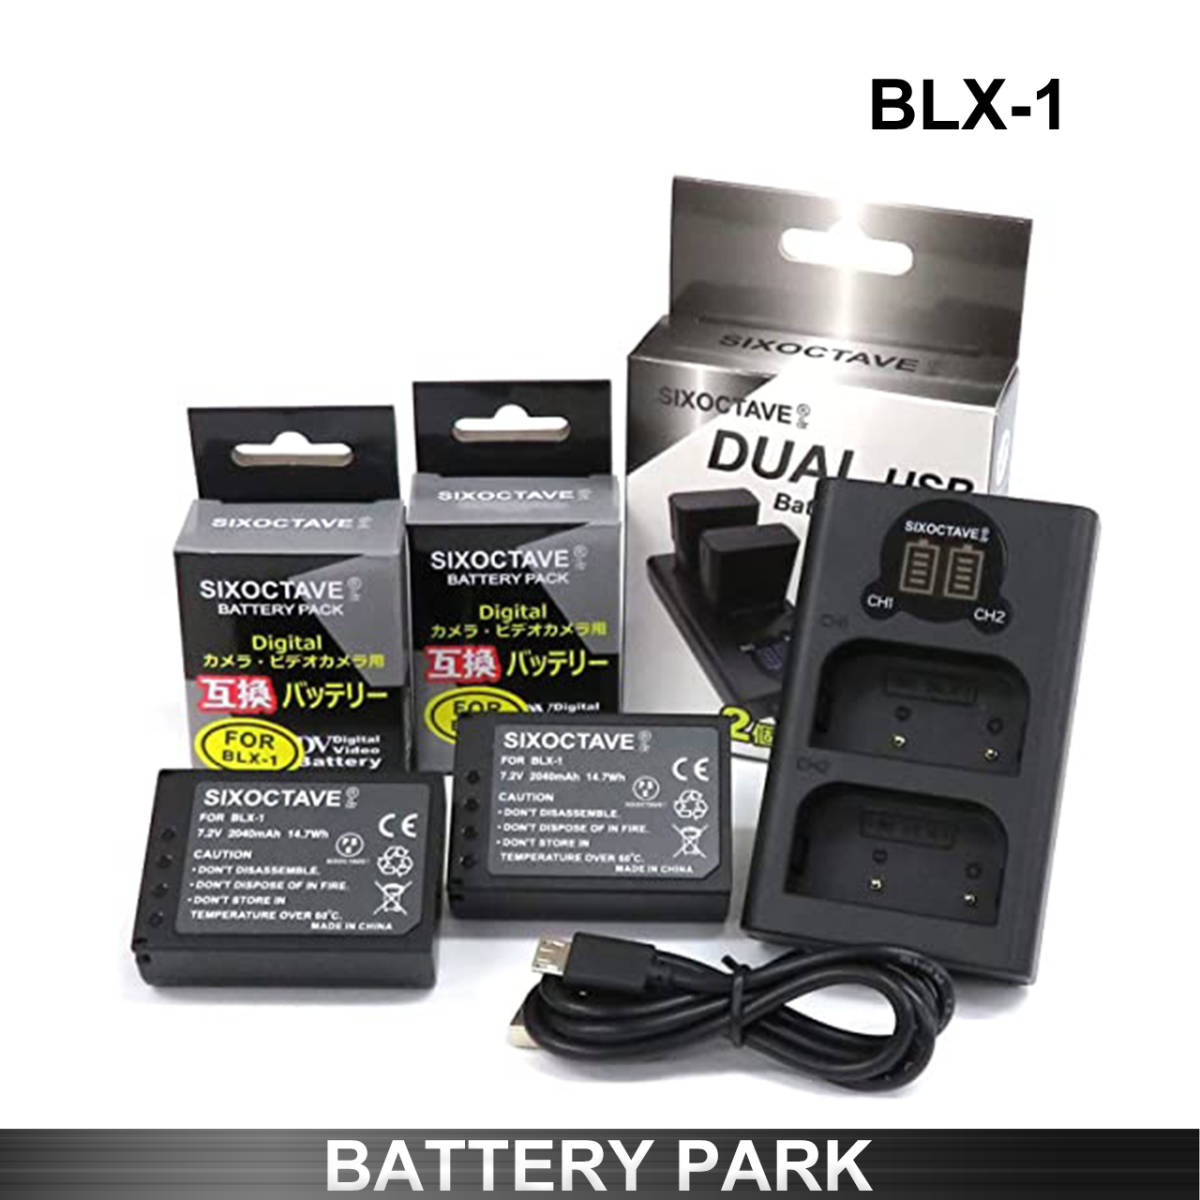 オリンパス BLX-1 対応互換バッテリー2個と互換LCD充電器 BCX-1 OM-1 MarkⅡ バッテリー2個まで同時充電可能 純正 互換電池共に対応_画像1